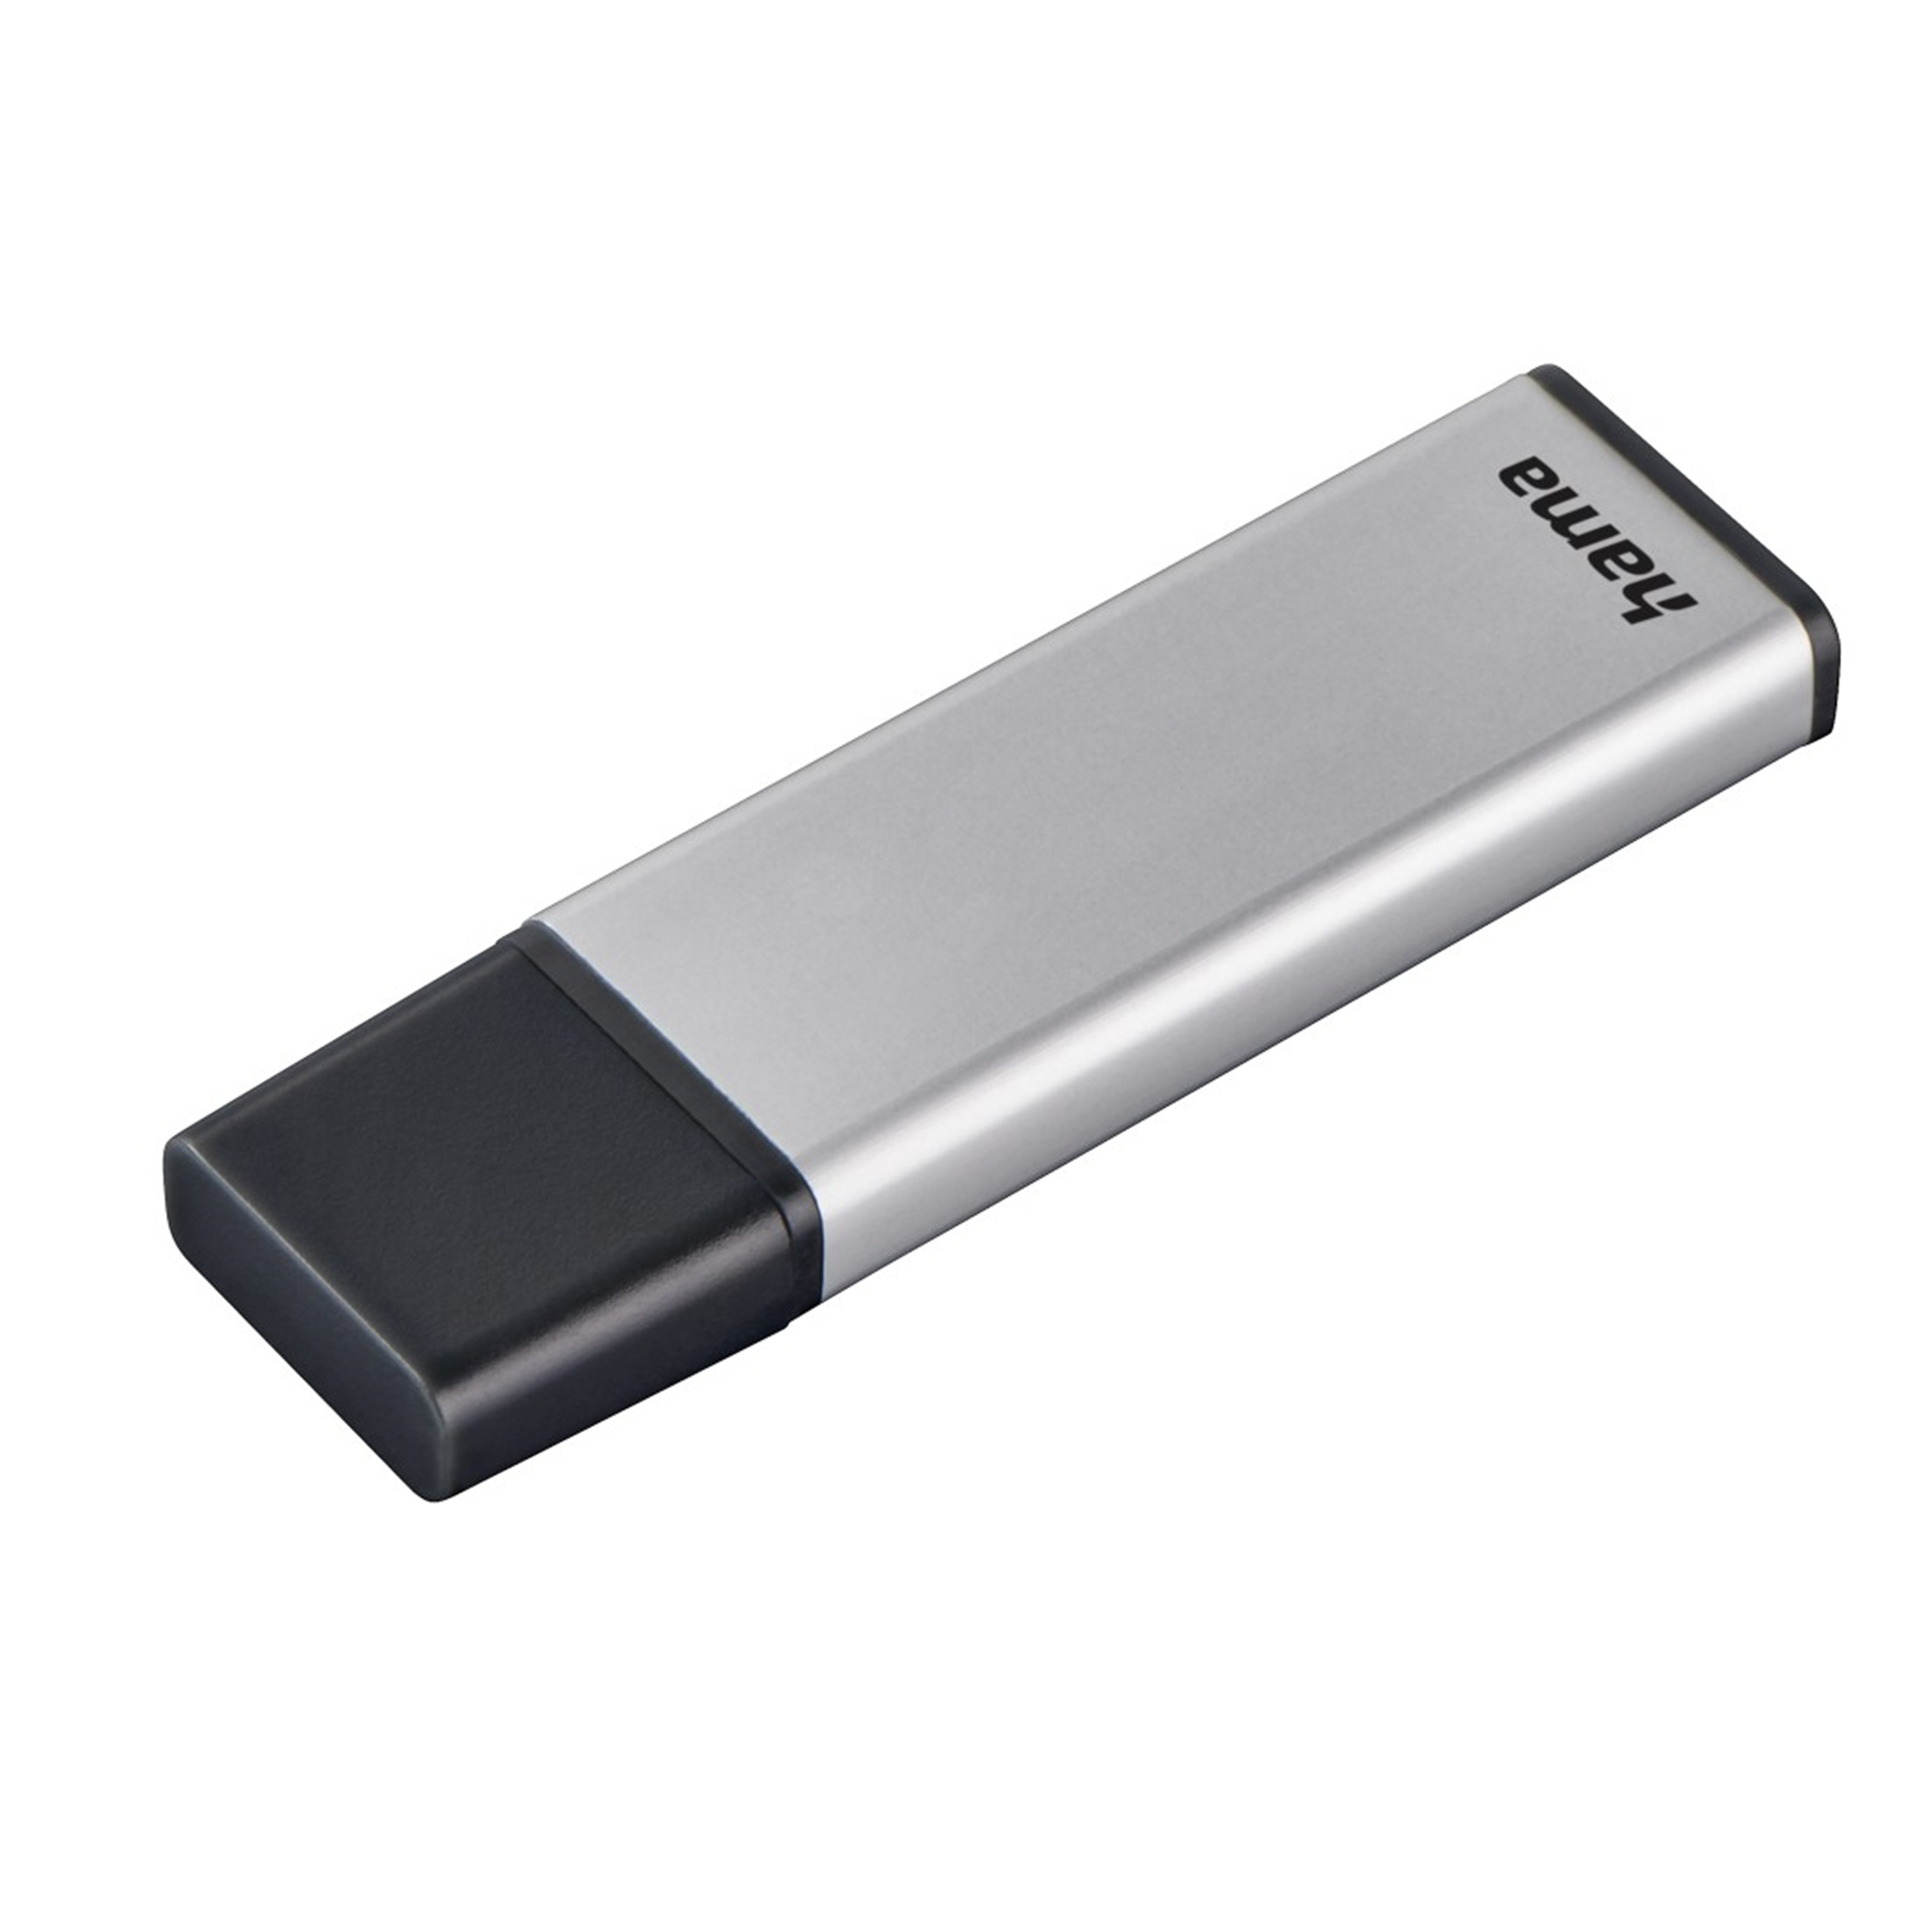 HAMA Classic 32 32 (Silber, USB-Stick GB GB)